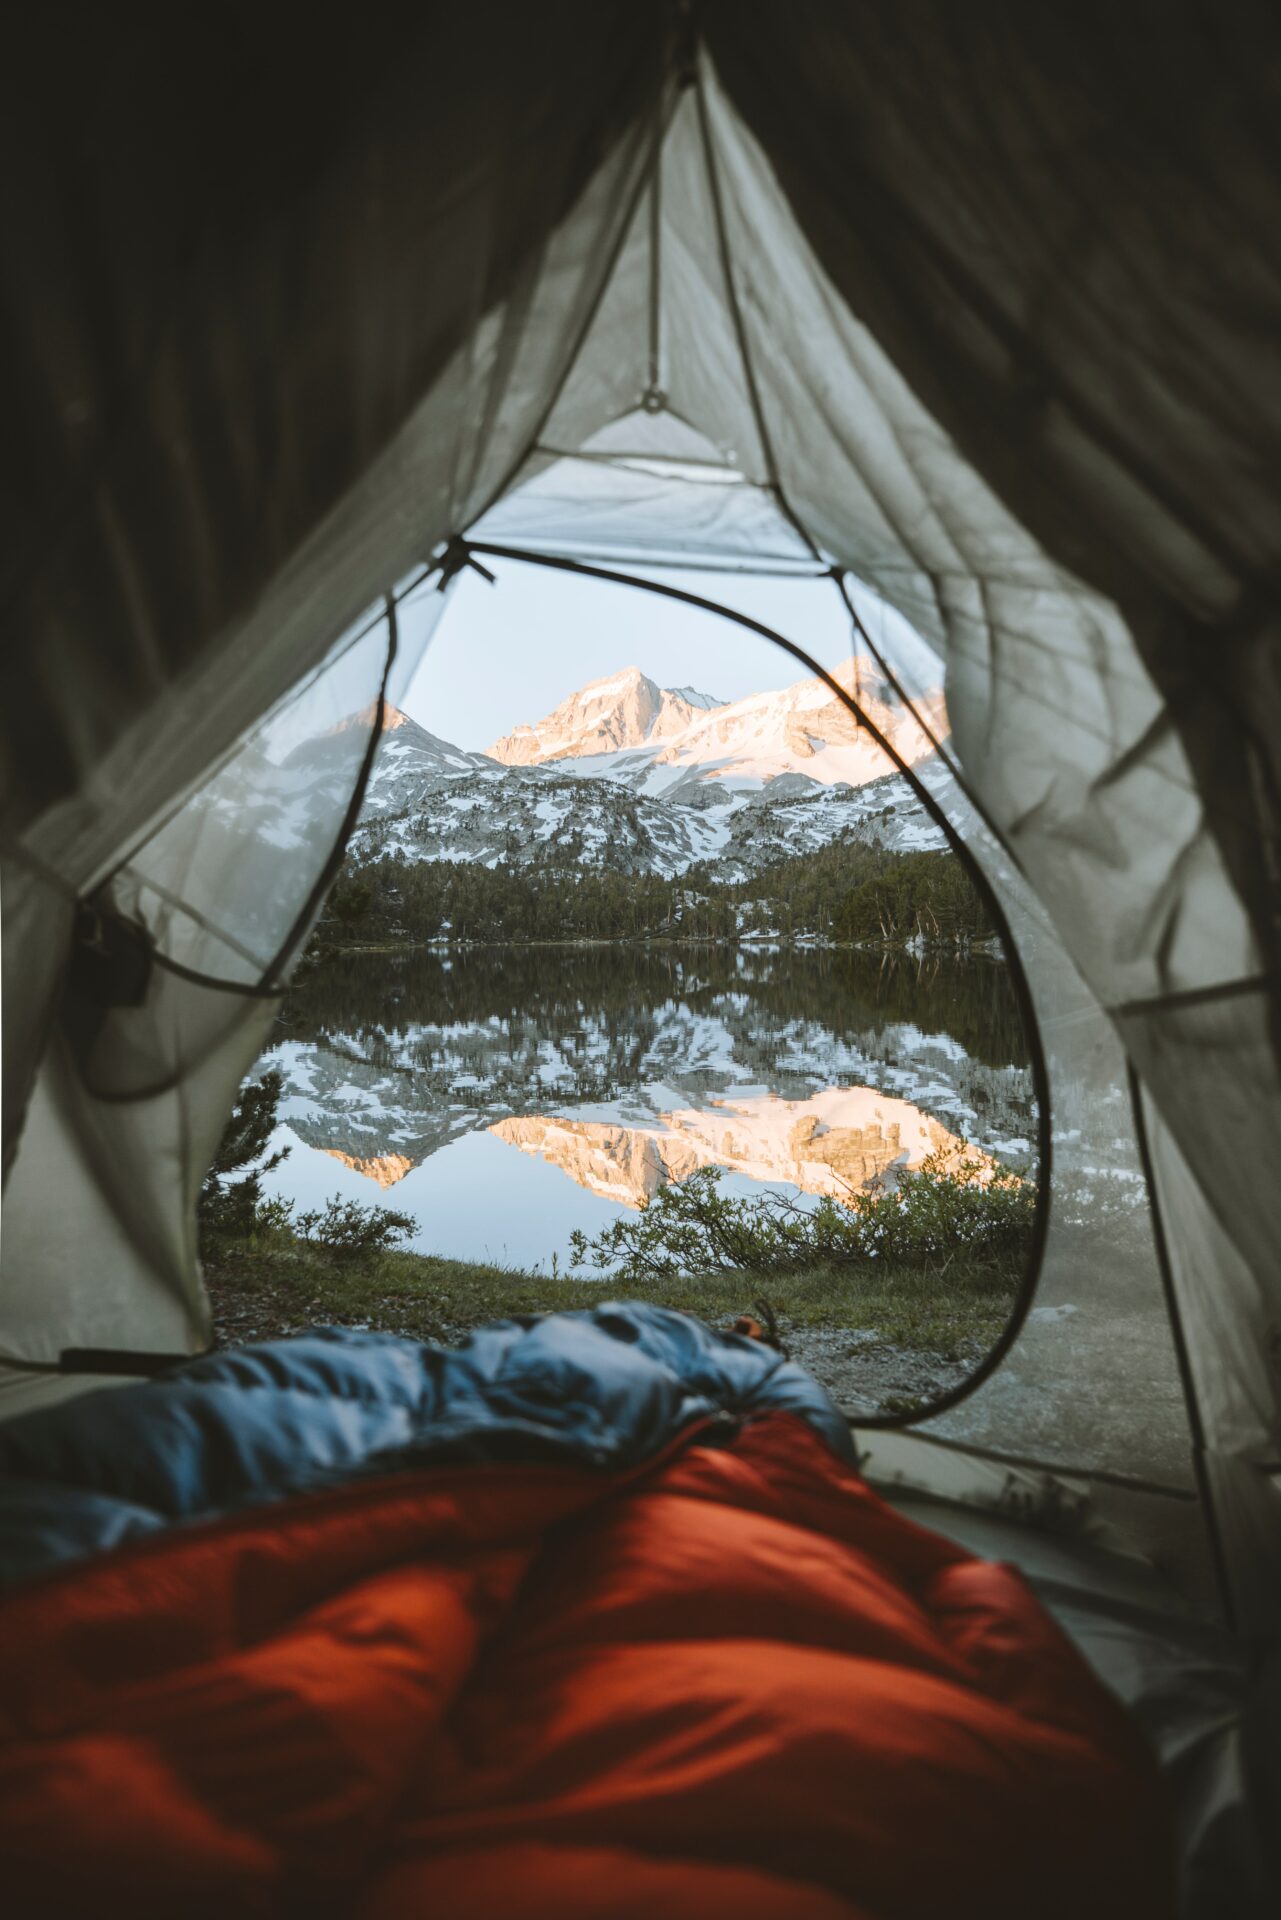 Auch einen Campingurlaub kann man mit einigem Komfort gestalten und entsprechend genießen. Bildquelle: ©Tom Tvr / Unsplash.com